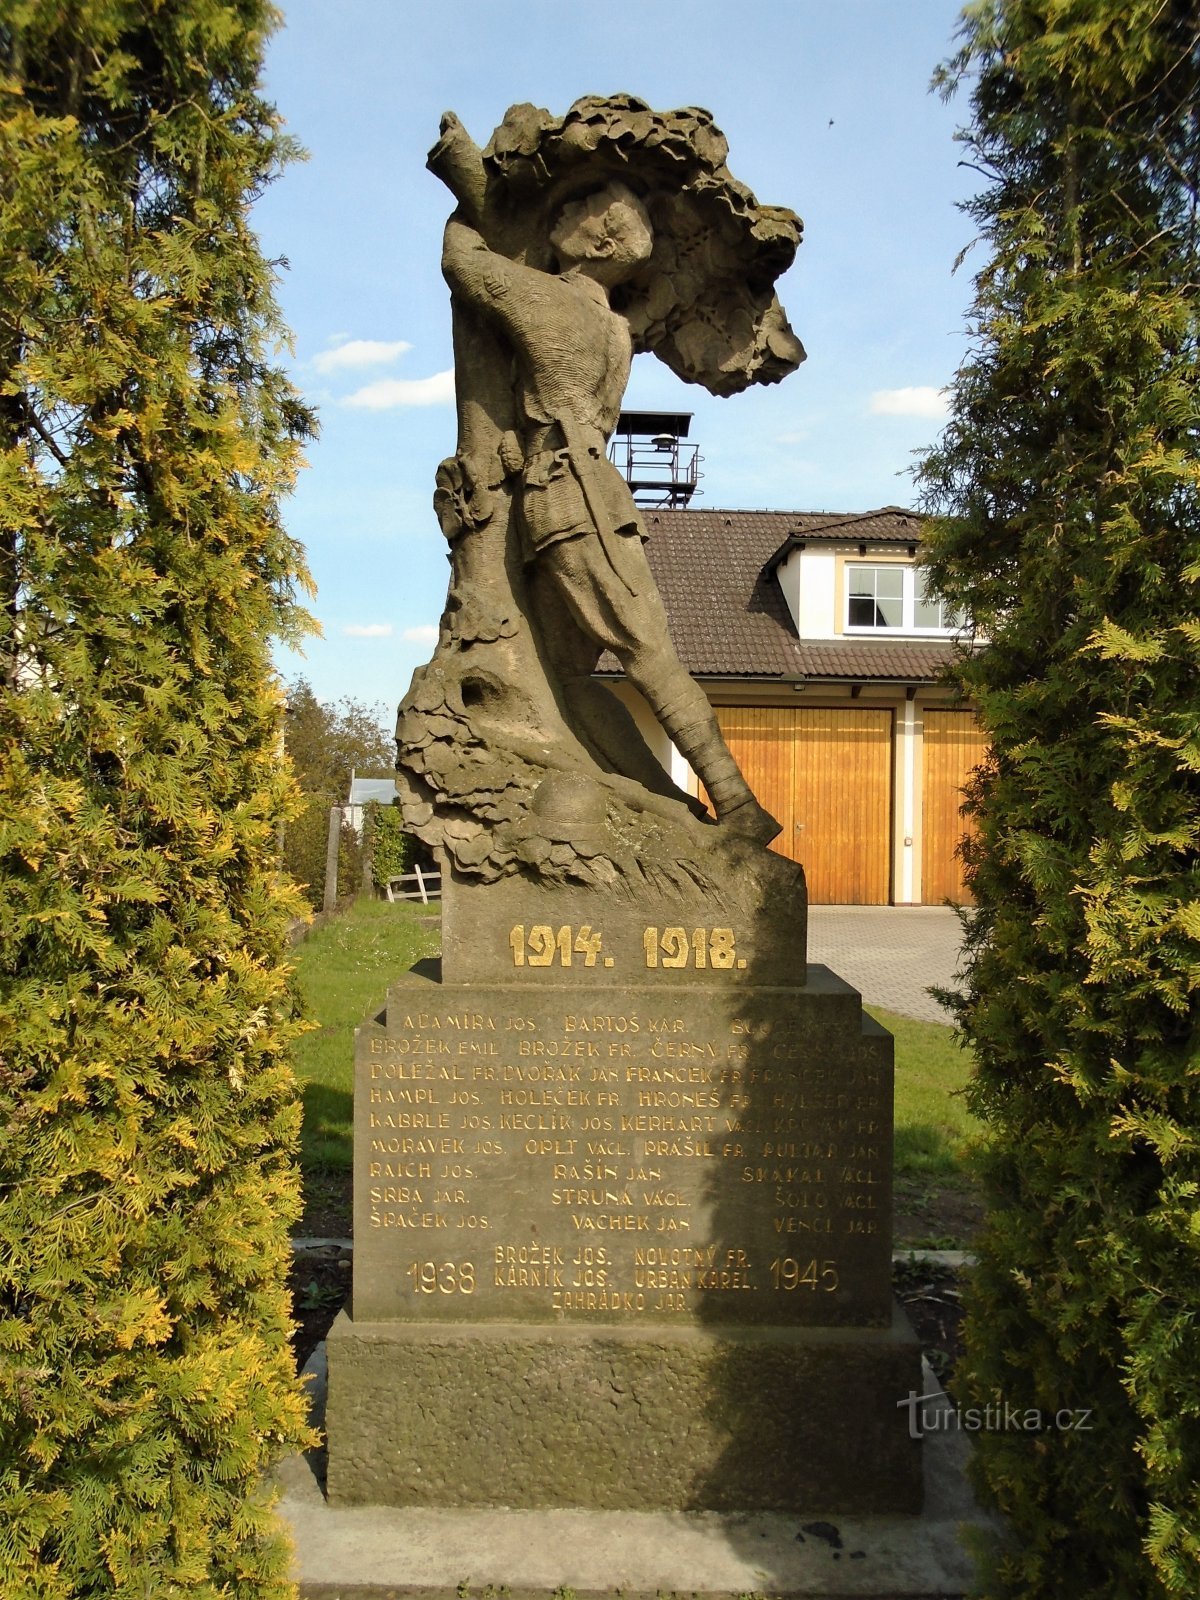 Ensimmäisessä maailmansodassa kuolleiden muistomerkki (Předměřice nad Labem)